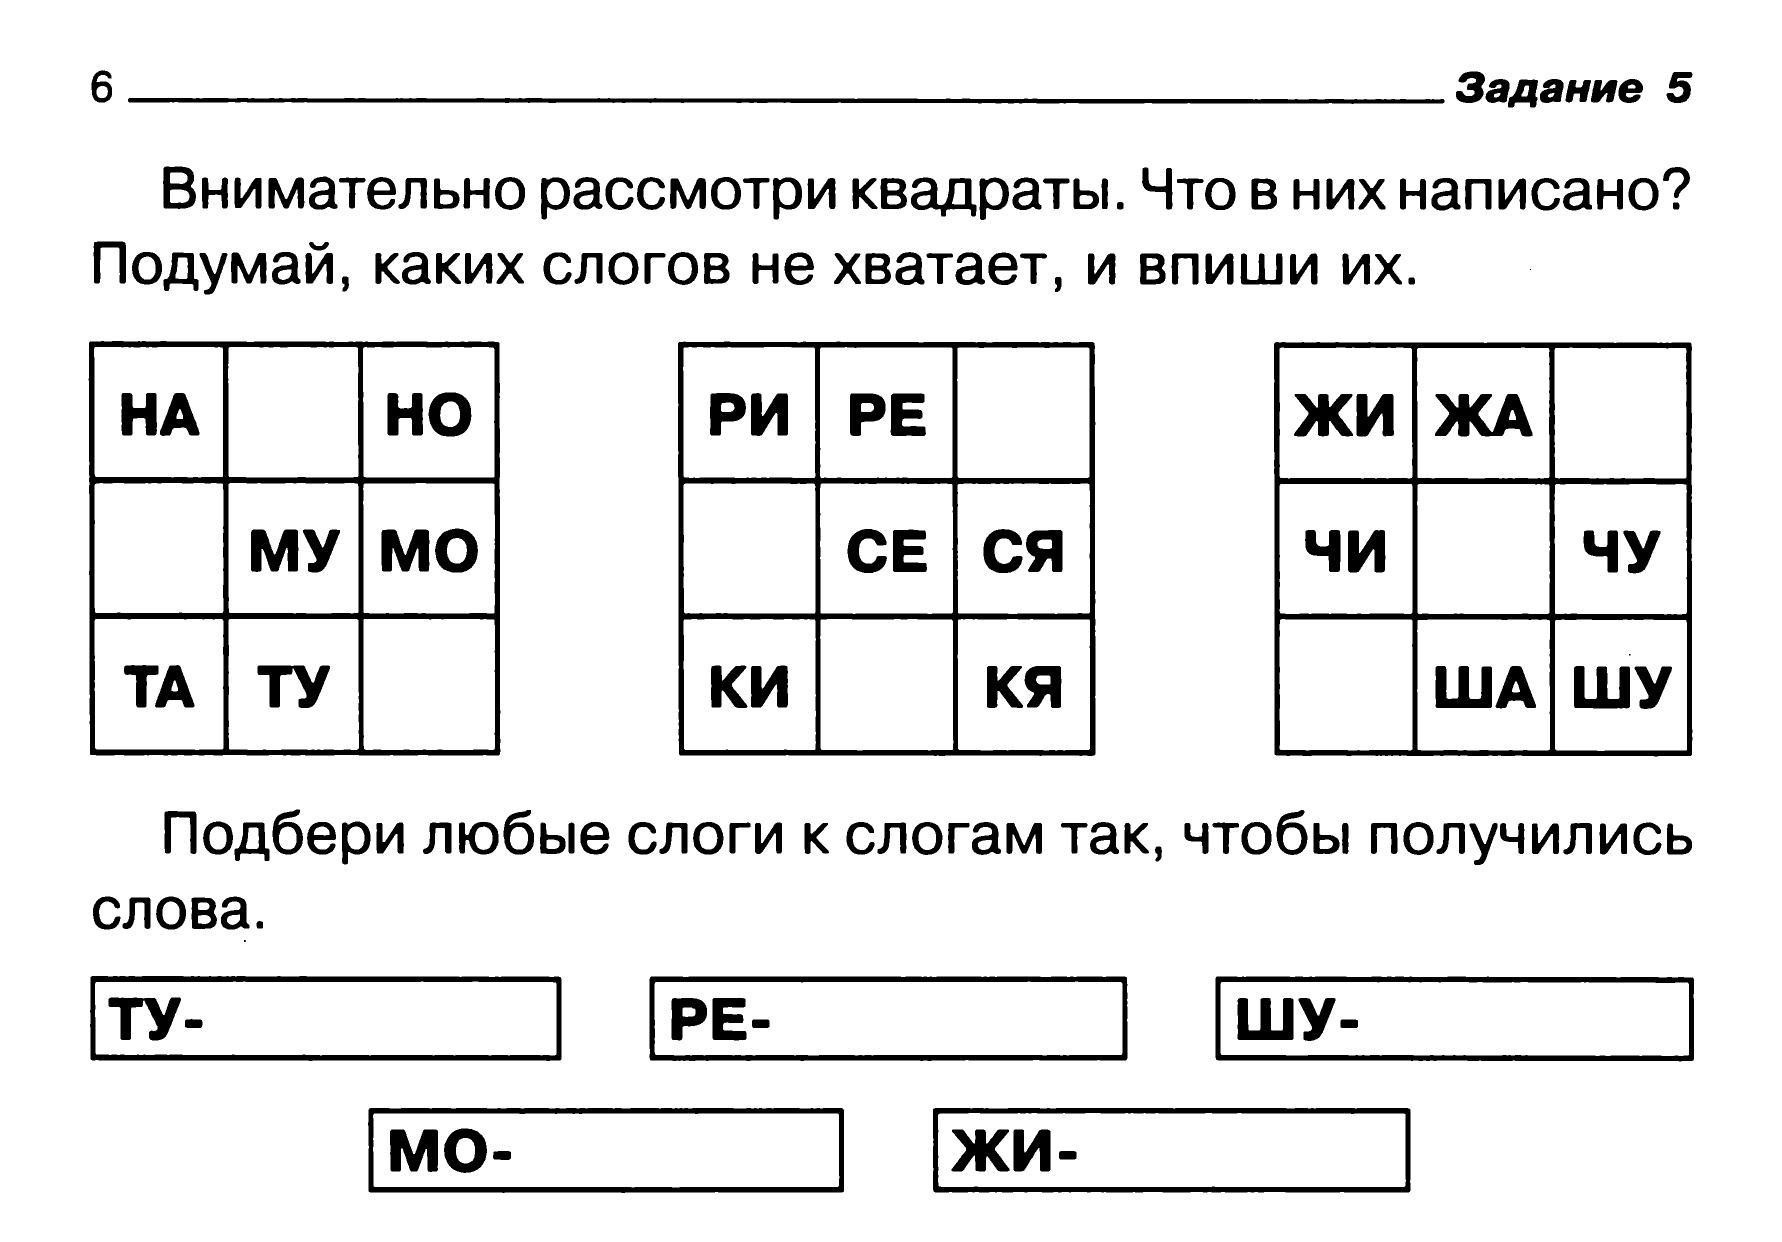 Интересные задания по русскому языку 4 класс в картинках